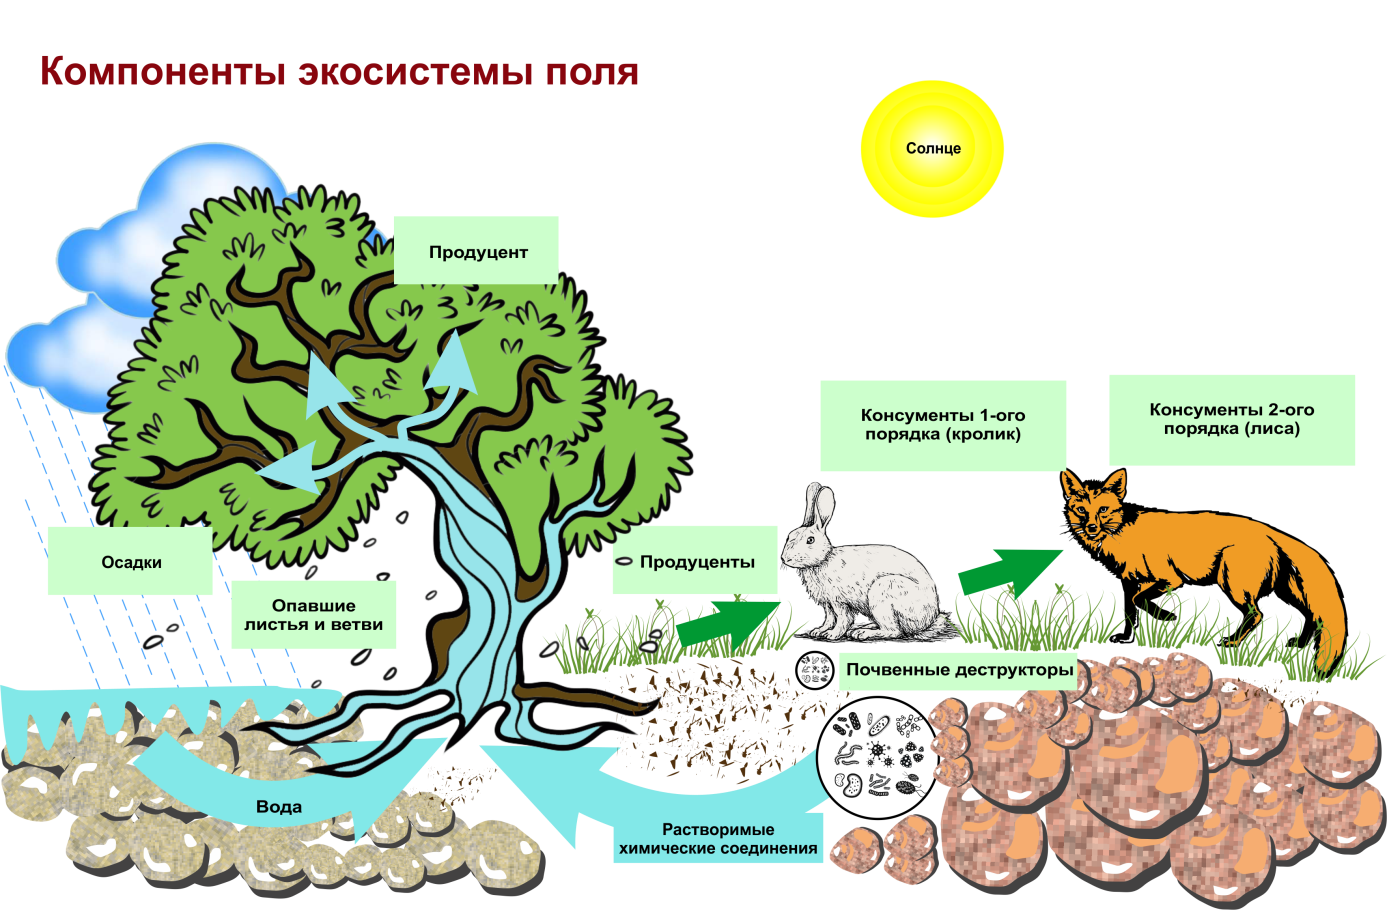 Совокупность организмов и компонентов неживой природы. Структура биогеоценоза и экосистемы. Схема трофической структуры биоценоза широколиственного леса. Строение биогеоценоза экосистемы. Схема состава компонентов экосистемы.